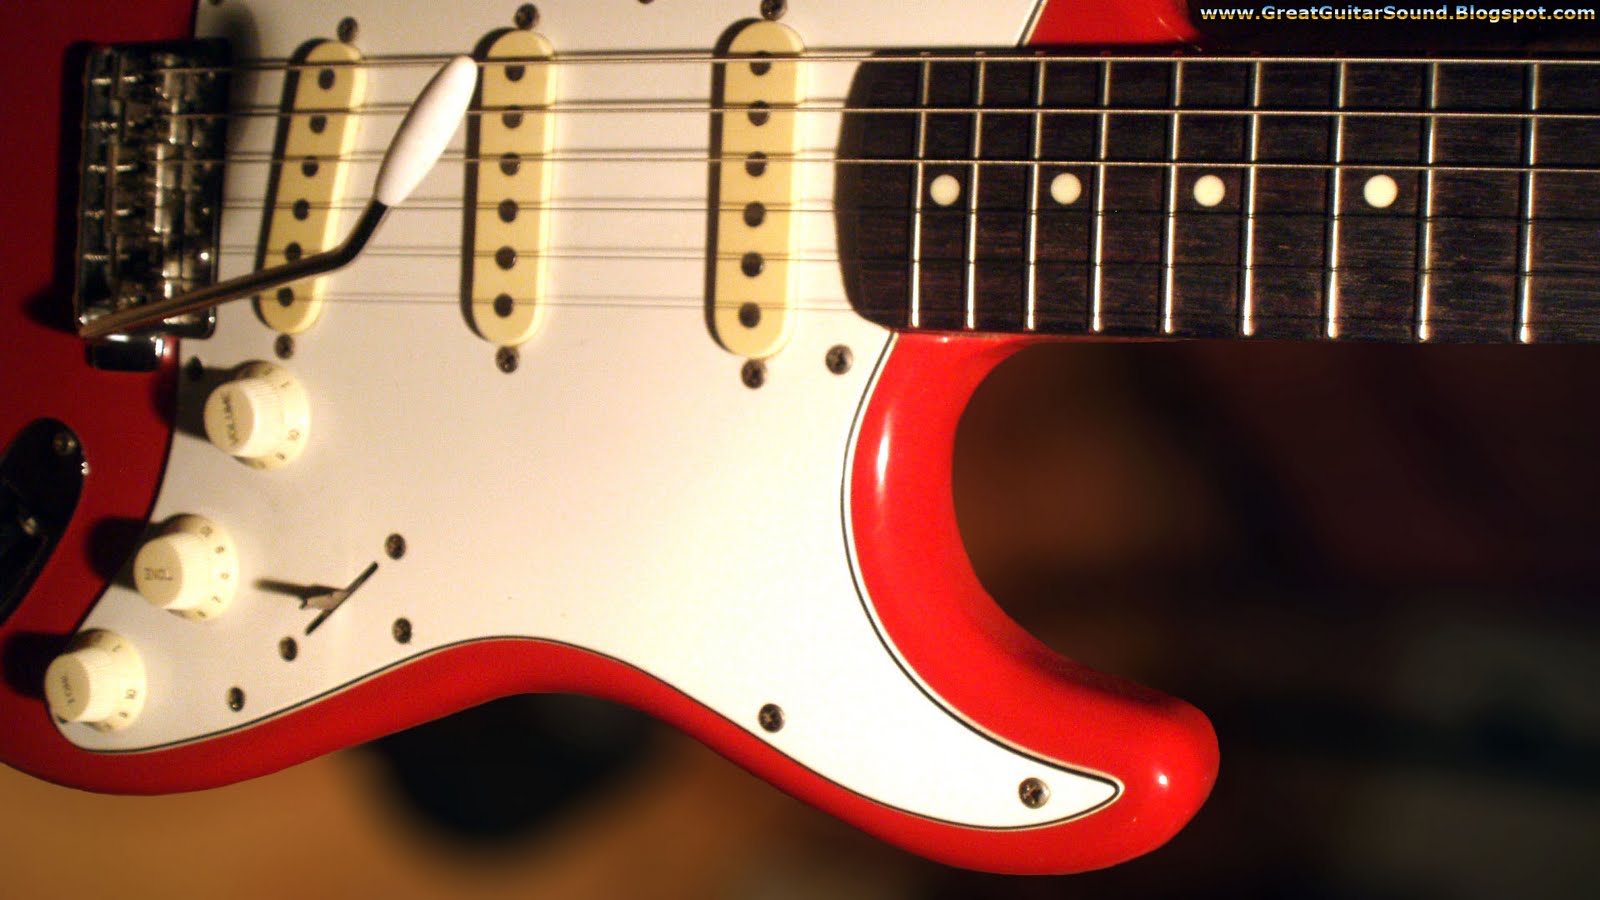 fender gitarre wallpaper,gitarre,bassgitarre,musikinstrument,elektrische gitarre,gezupfte saiteninstrumente